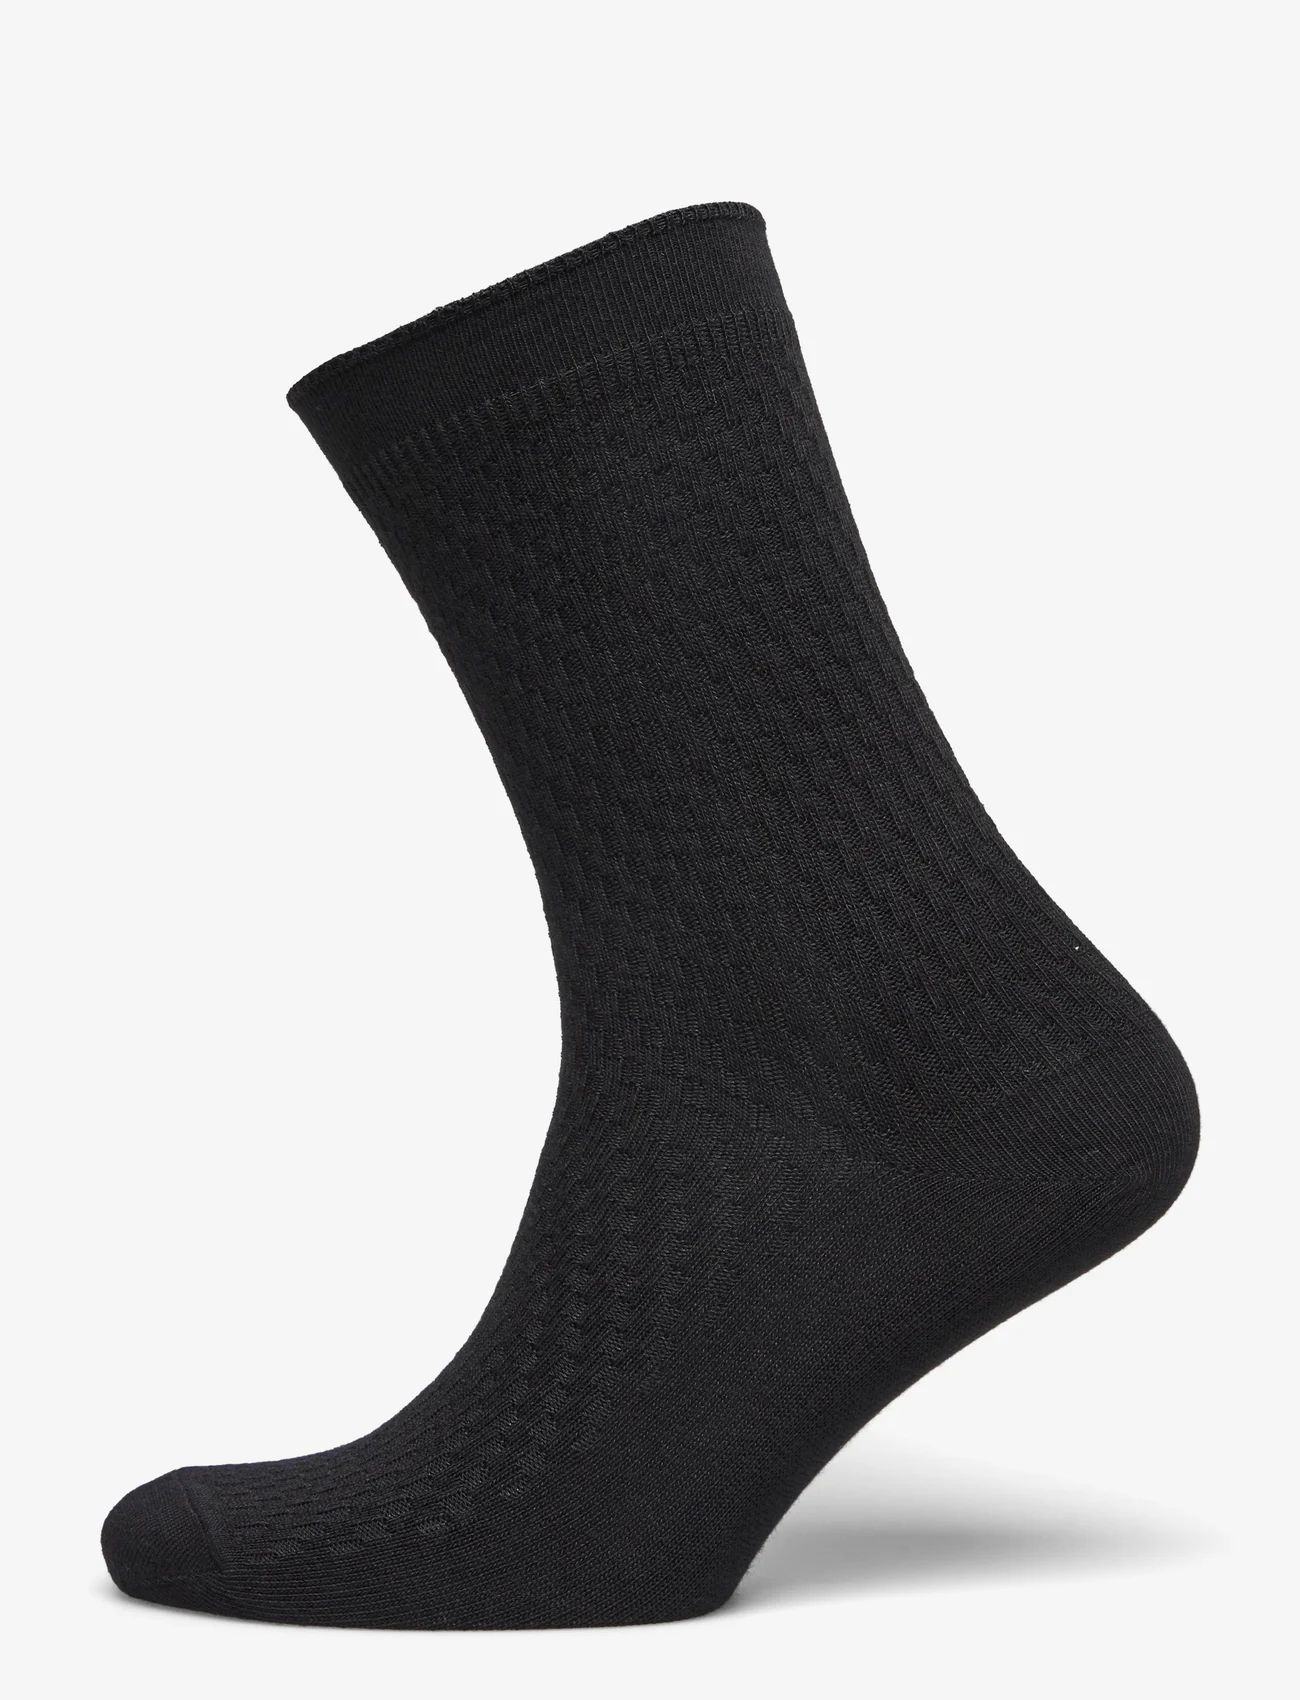 mp Denmark - Greta socks - lägsta priserna - black - 0